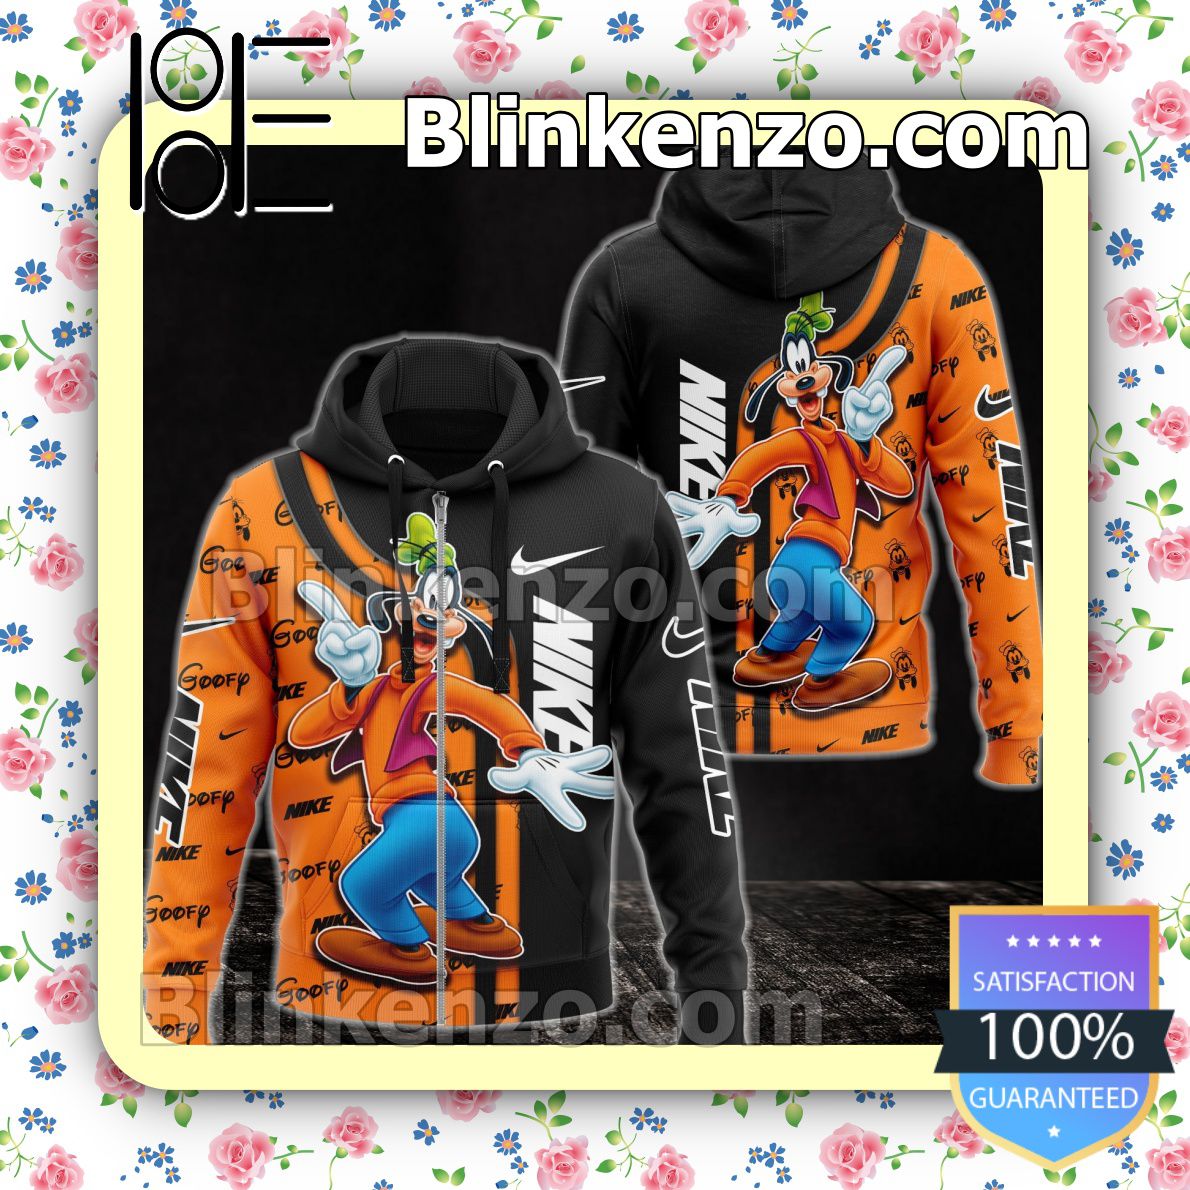 Great Nike With Goofy Black And Orange Full-Zip Hooded Fleece Sweatshirt